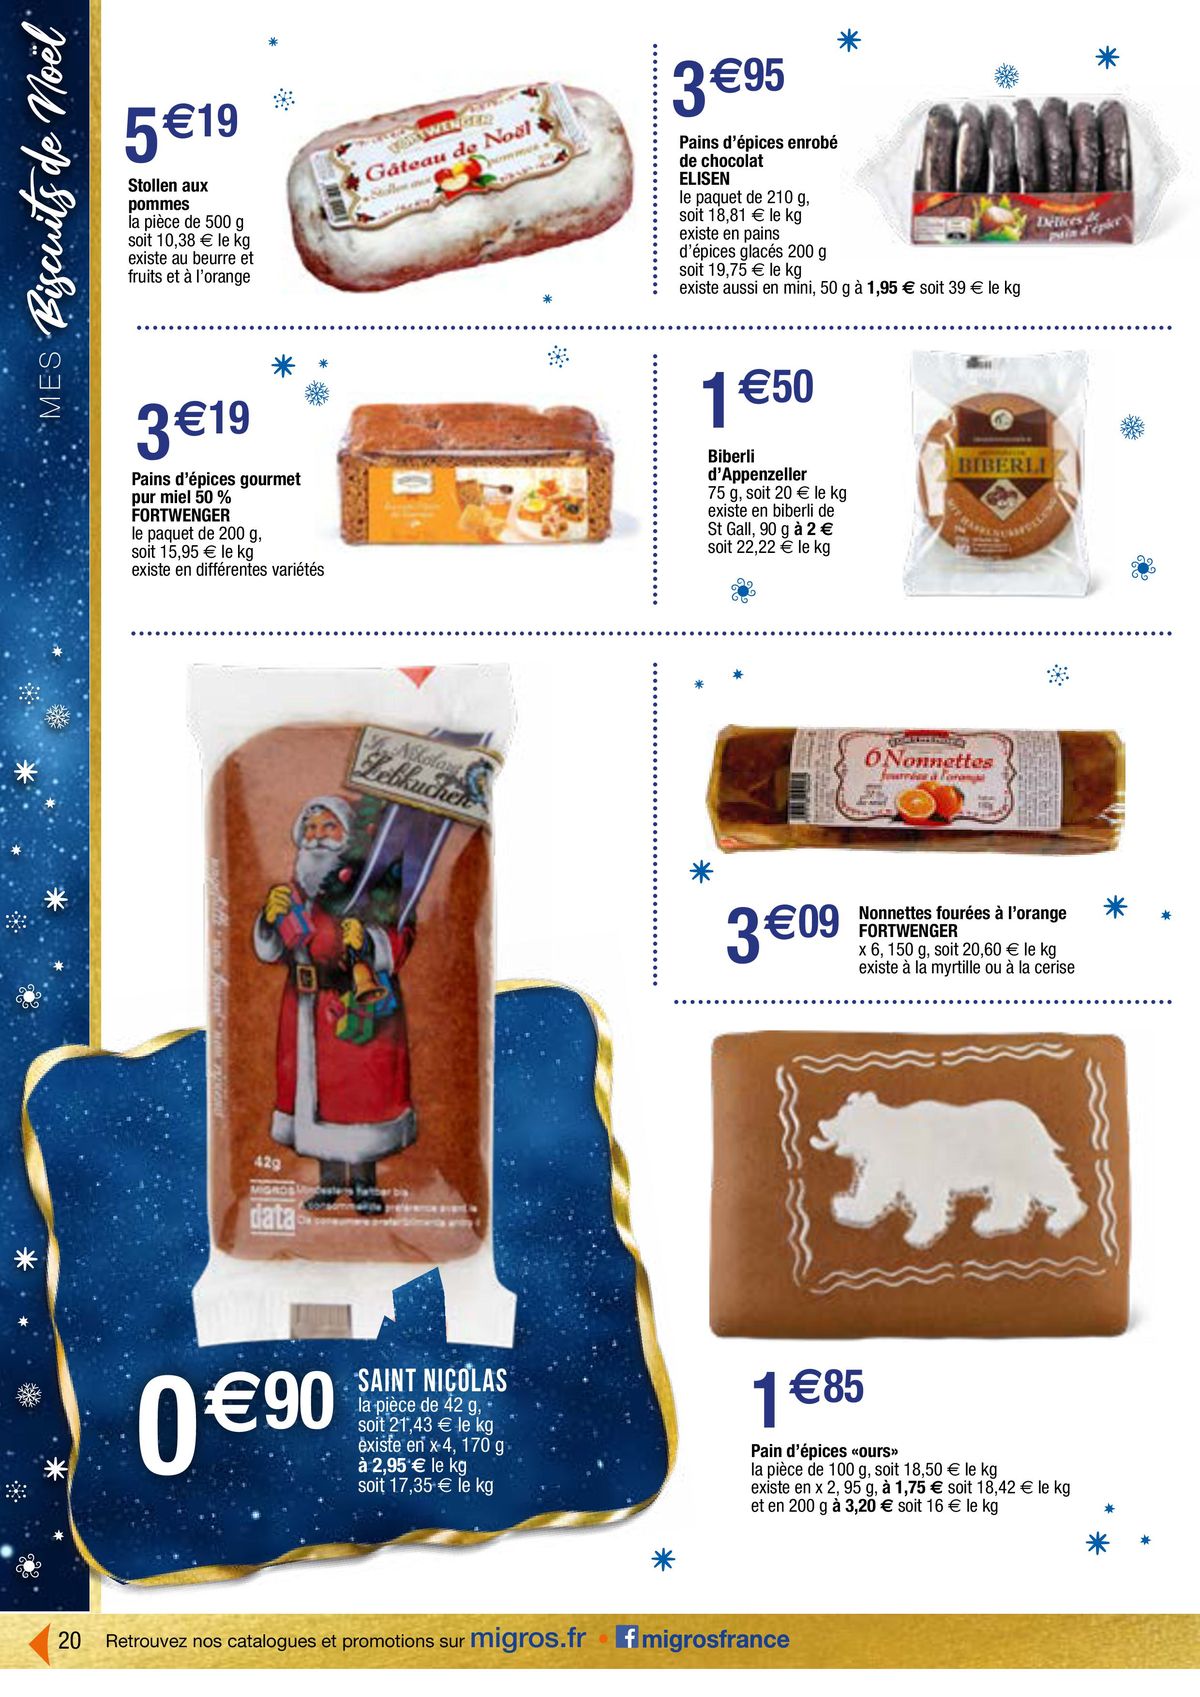 Catalogue Le meilleur du chocolat, page 00020